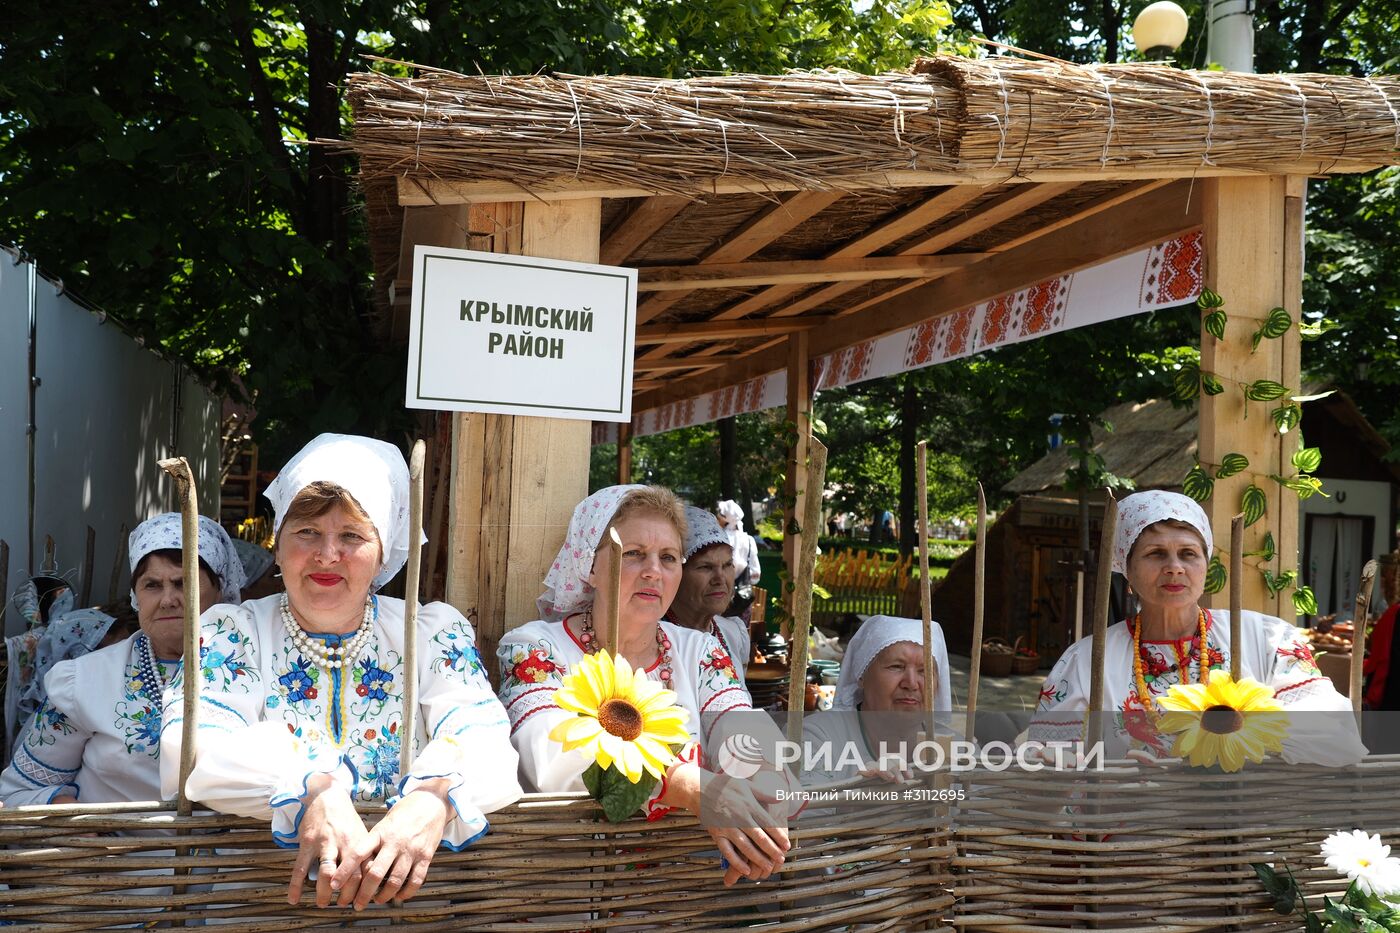 Выставка-ярмарка сельского туризма "Агротур" в Краснодаре